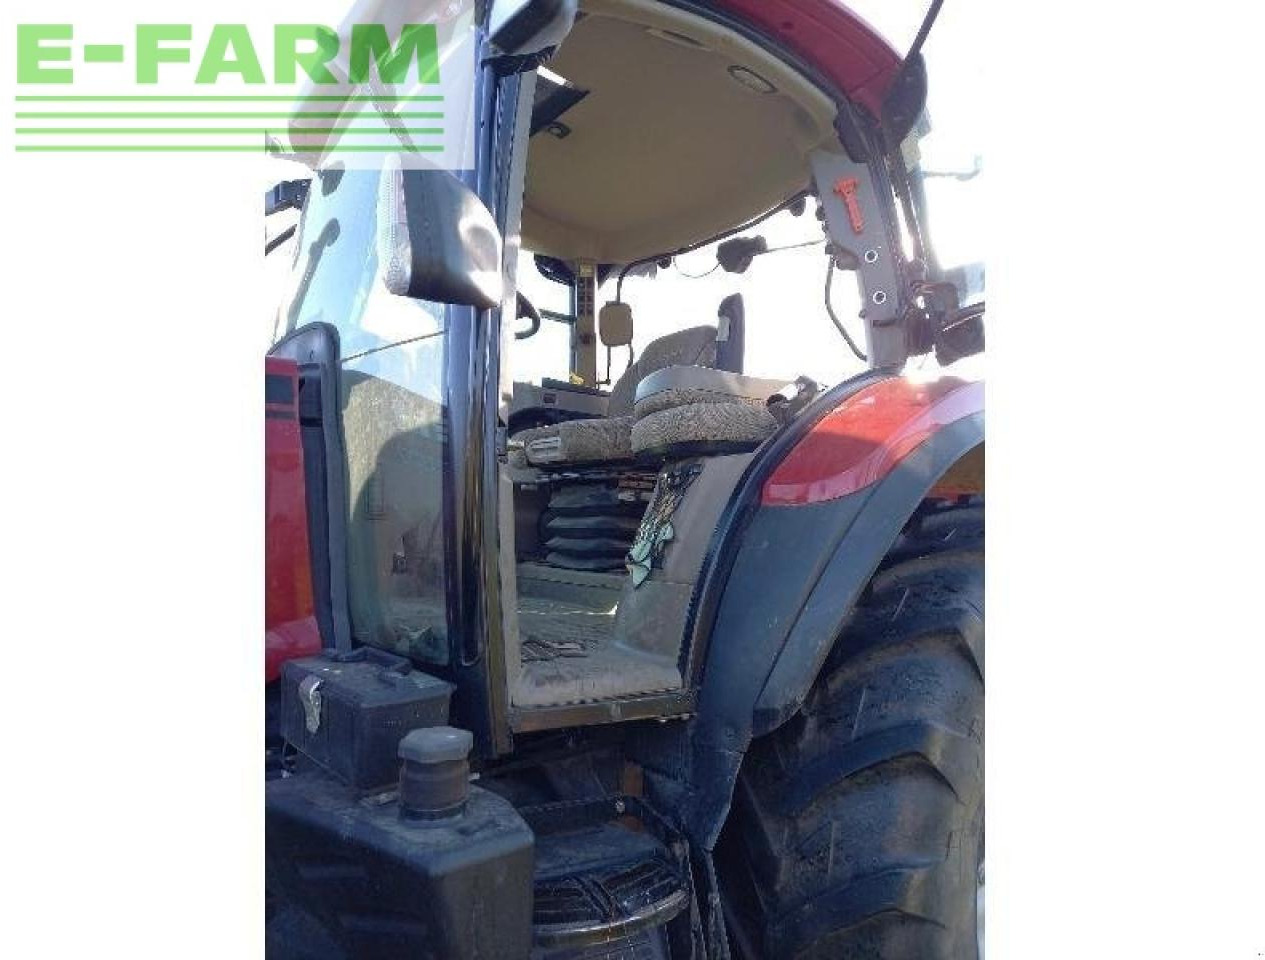 Farm tractor Case-IH marque case ih: picture 10